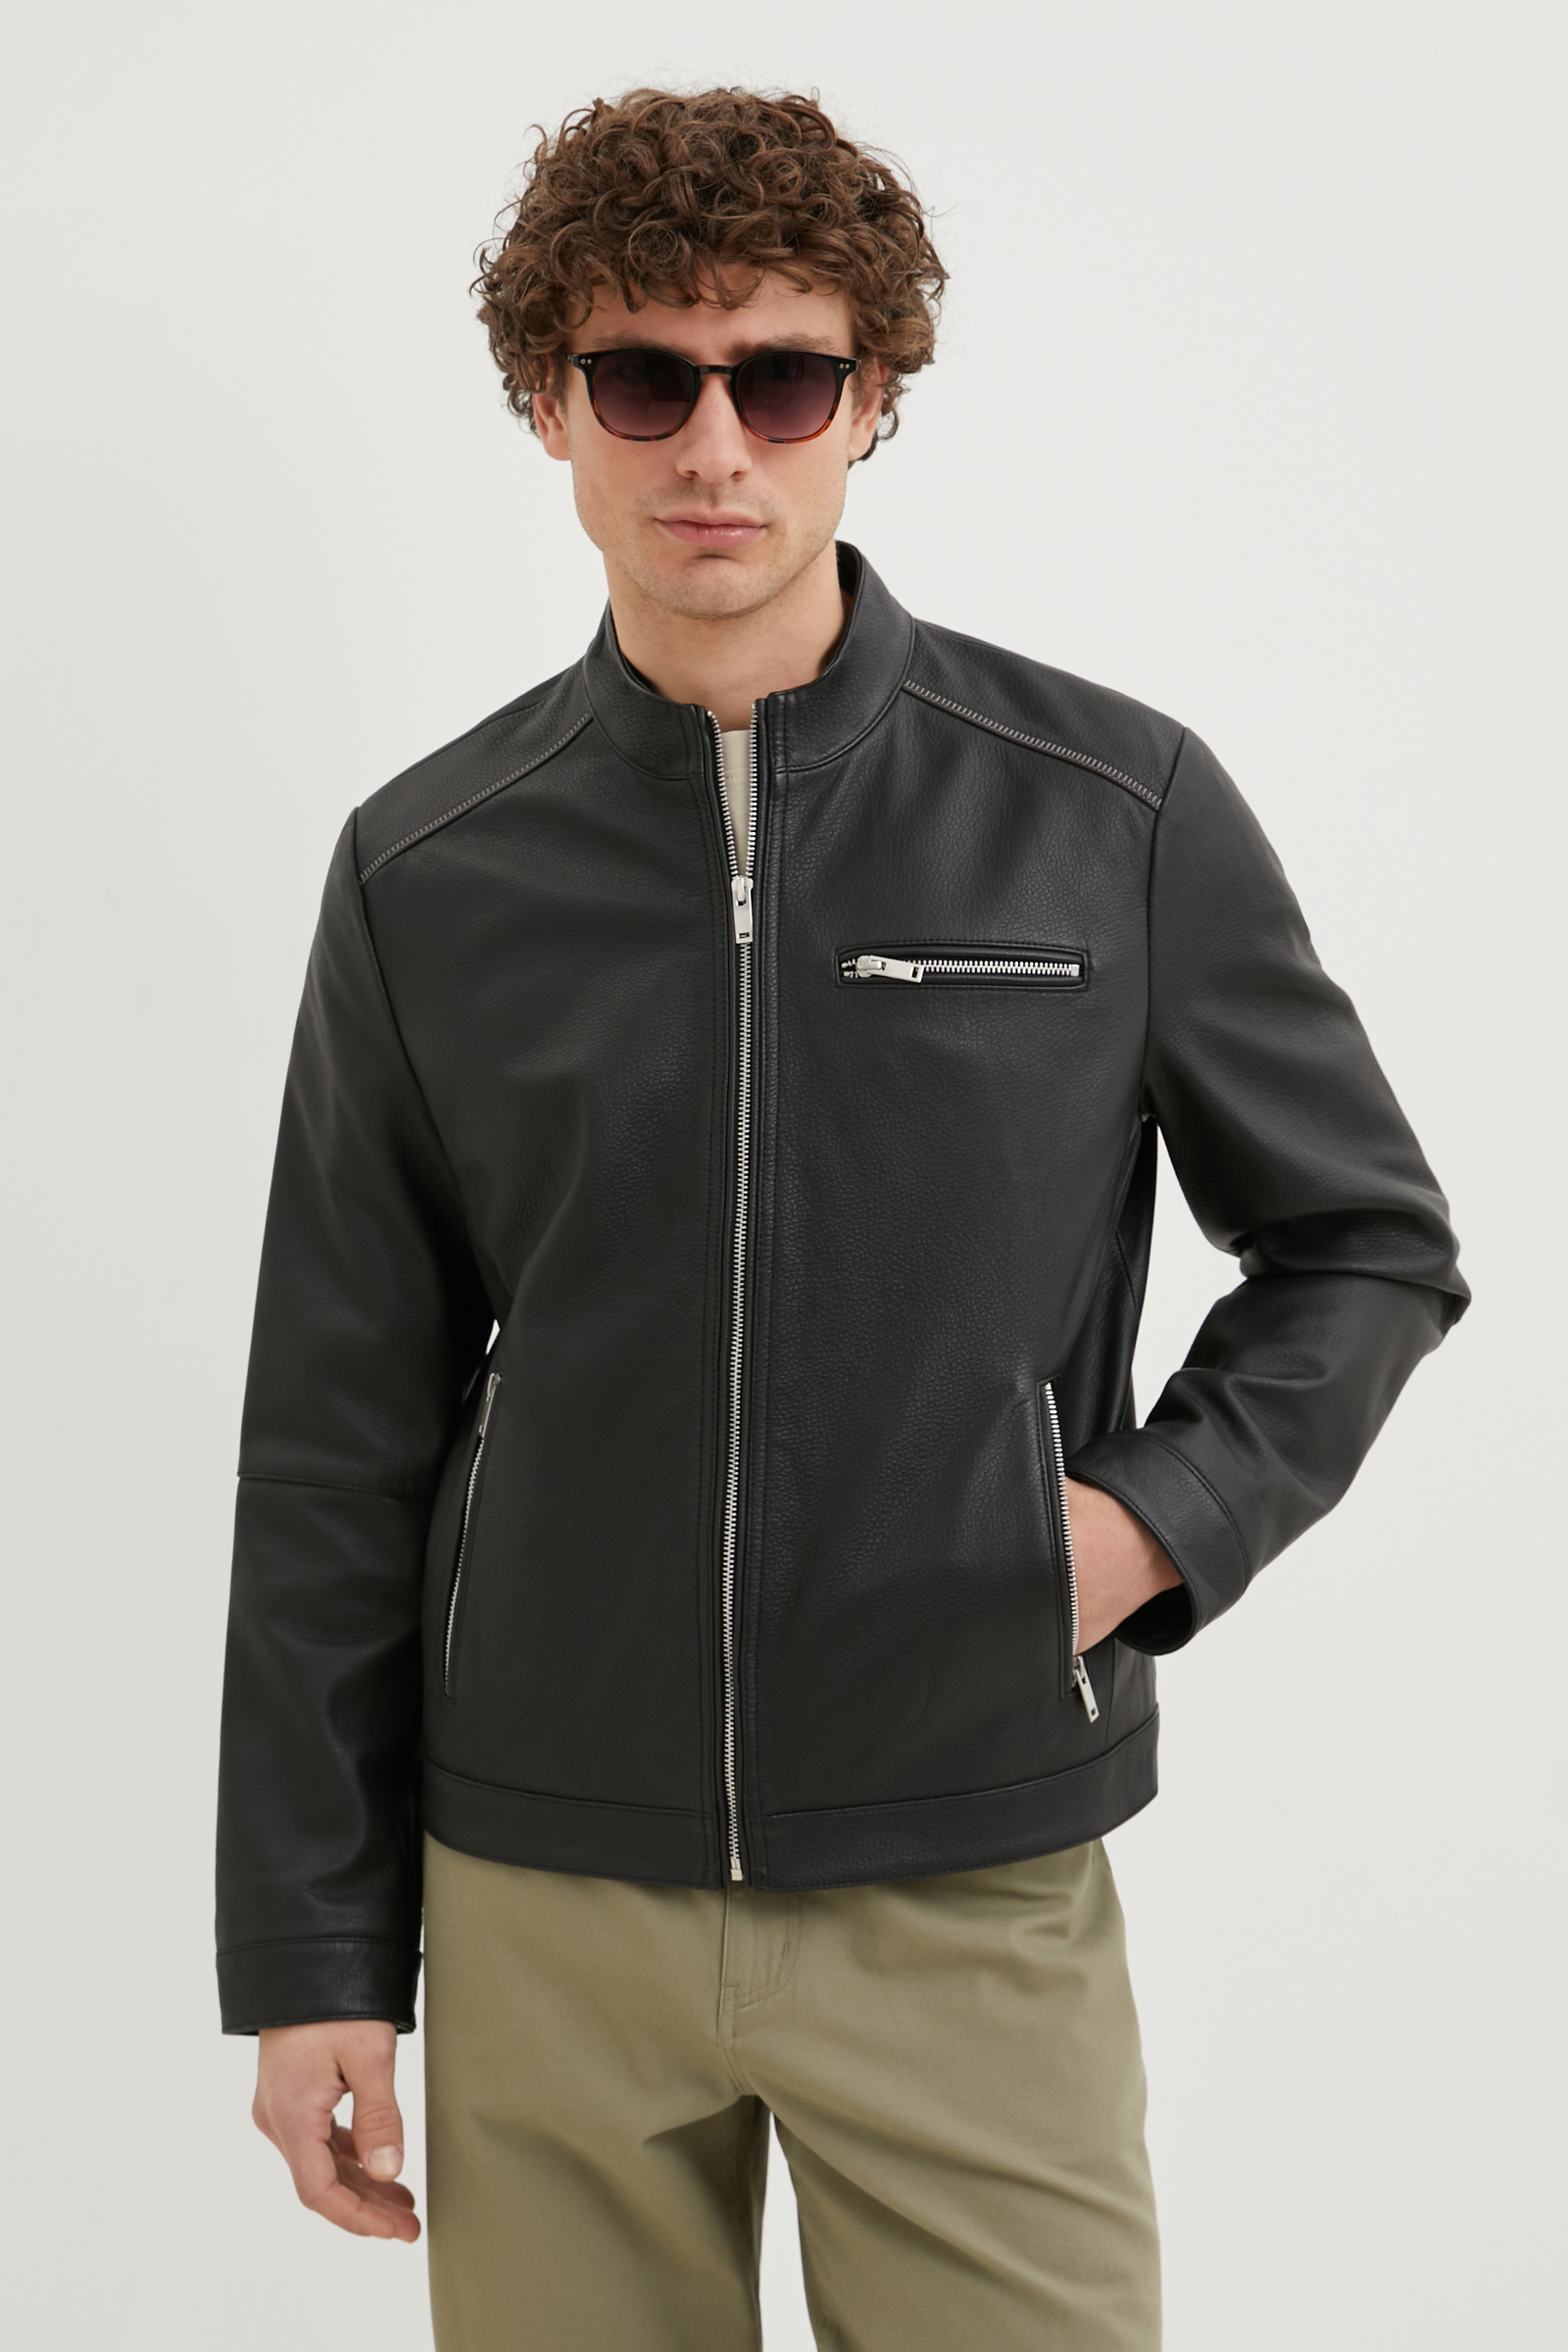 Кожаная куртка мужская Finn Flare FBE21803 черная L